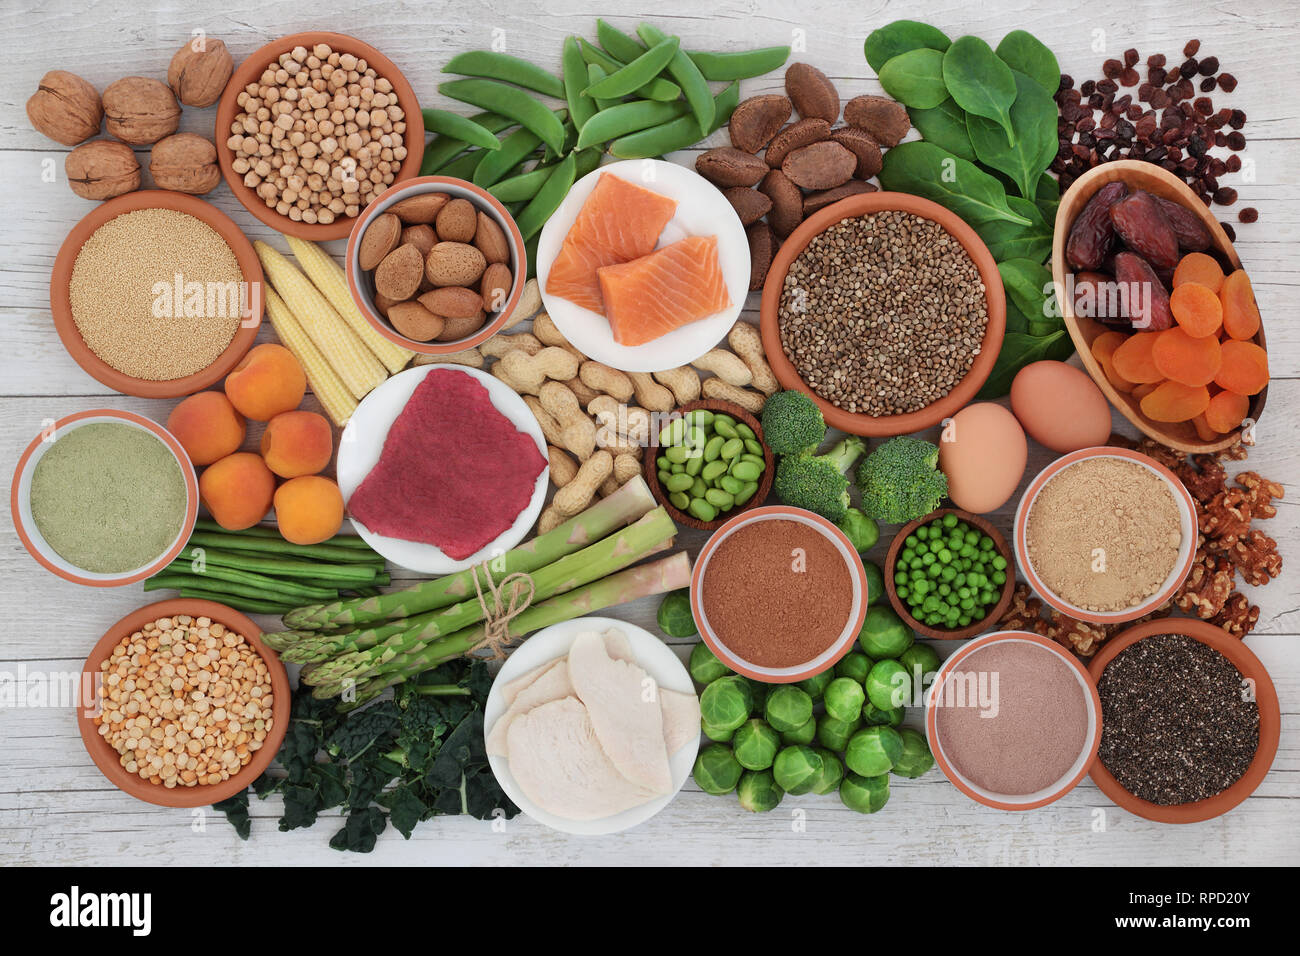 Aliments santé riches en protéines de viande, poisson, produits laitiers, légumineuses, légumes, fruits secs, céréales, supplément en poudre, les graines et les noix. Banque D'Images